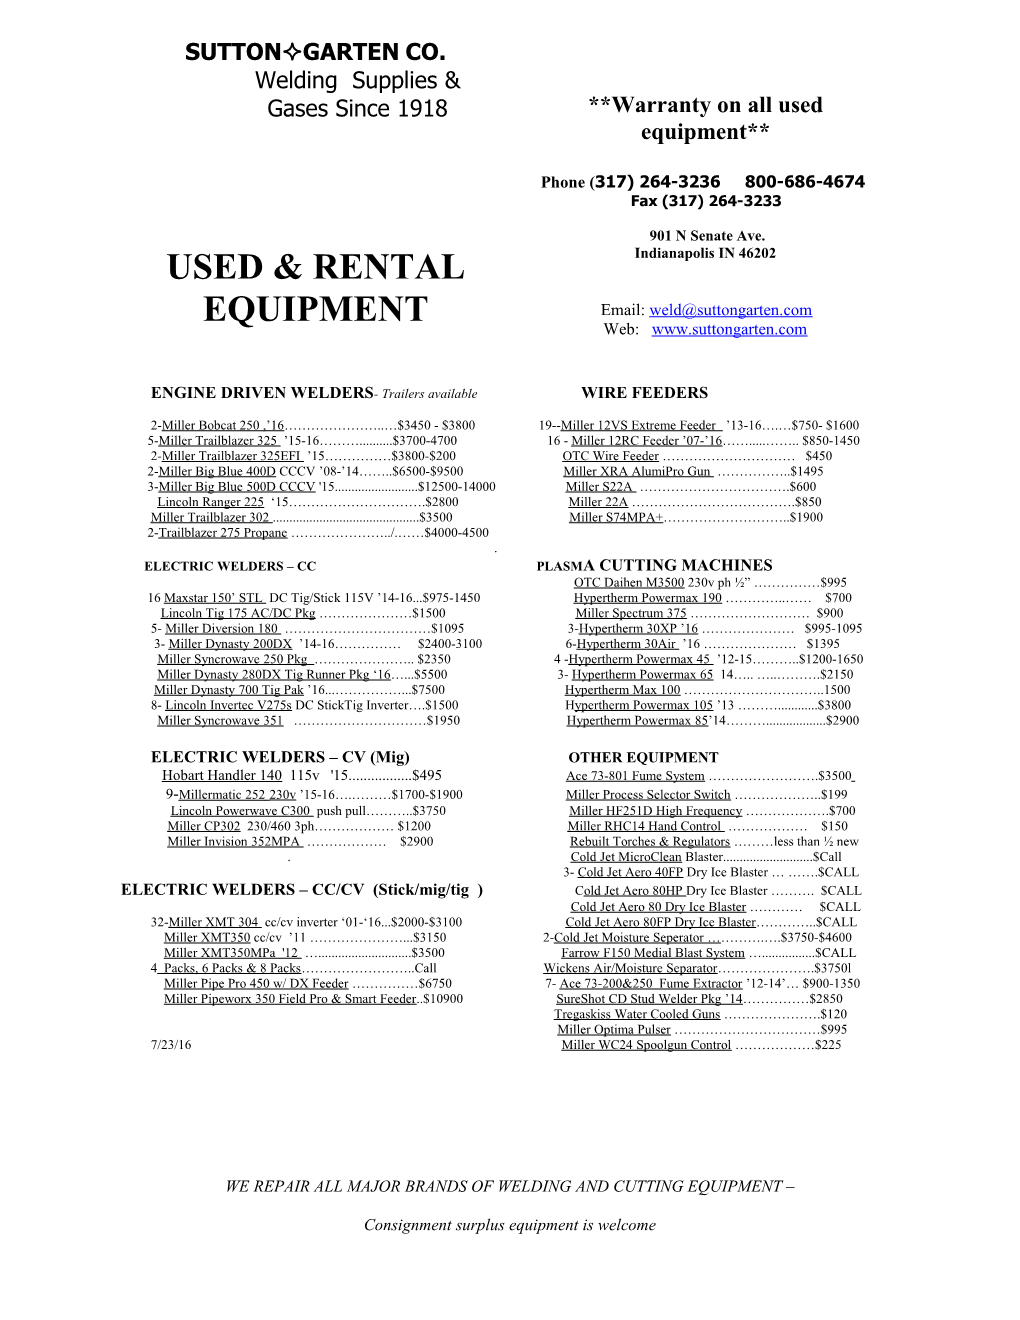 Used Equipment List